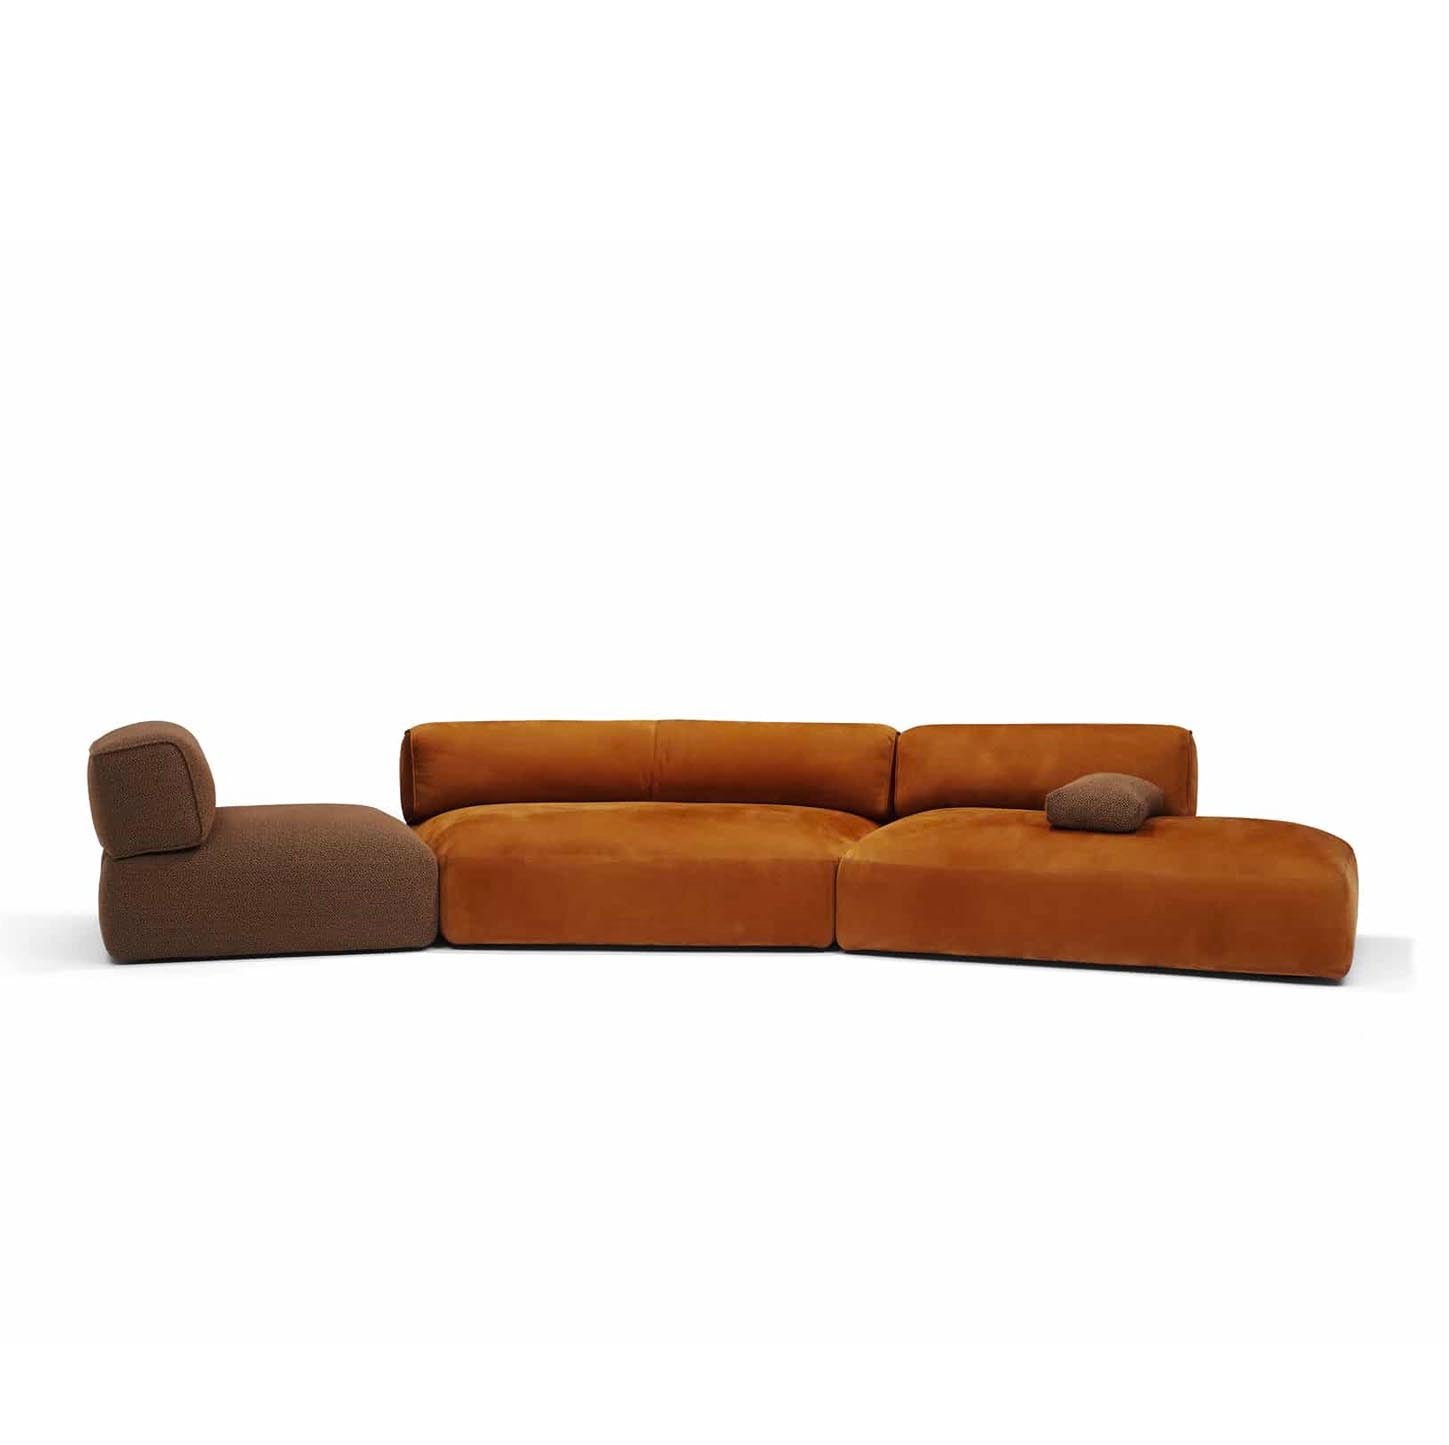 Gilbert sofa